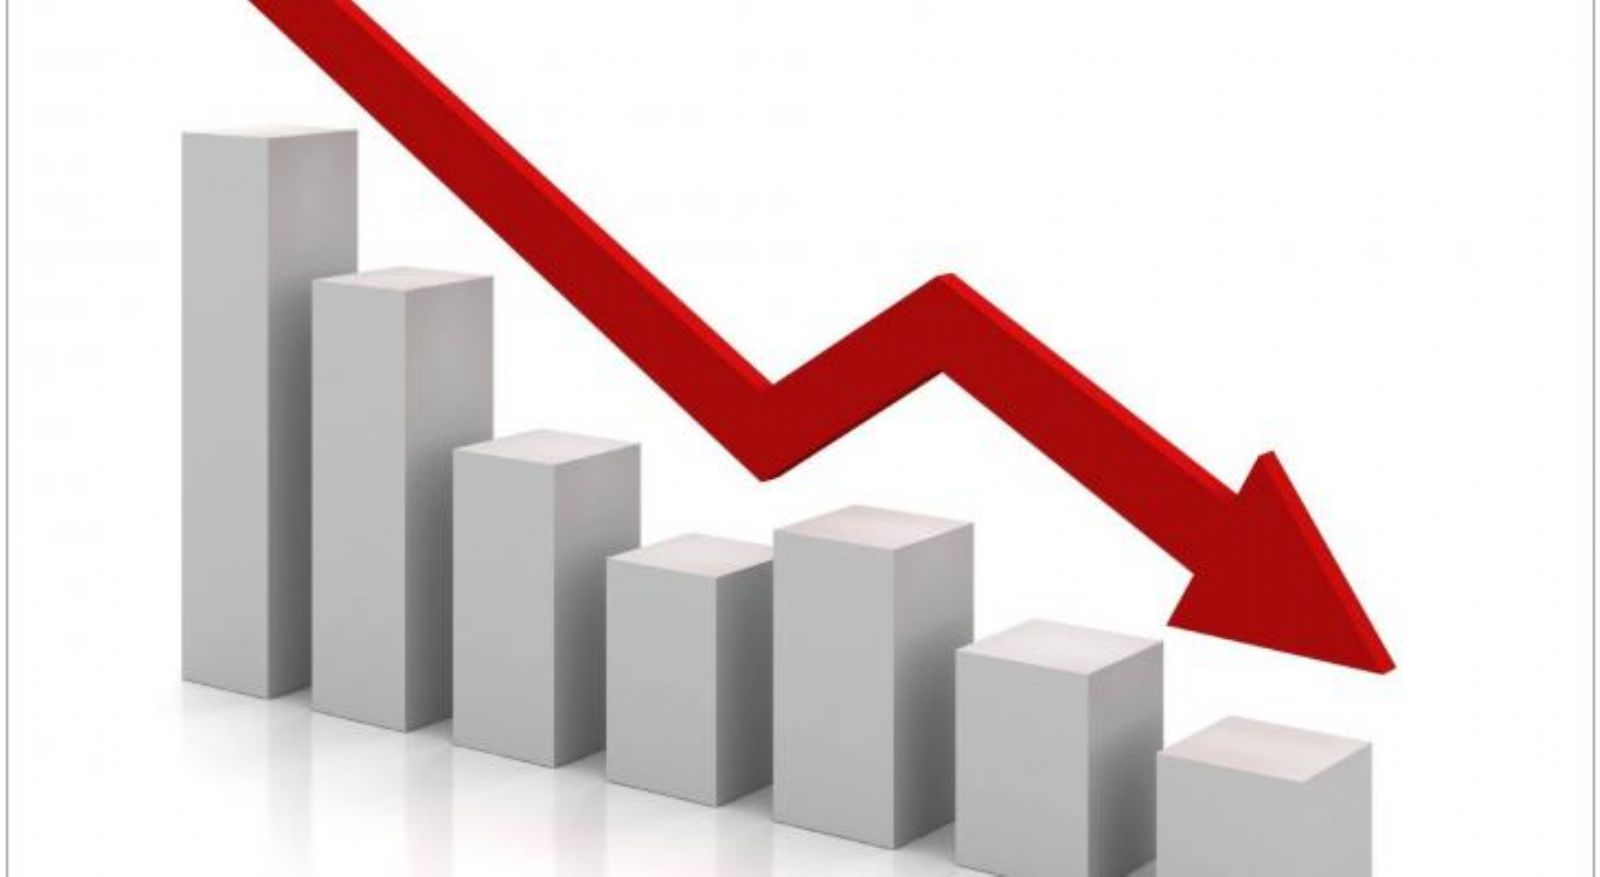 "الإحصاء": تراجع مؤشر أسعار المنتجين بنسبة 1.17%